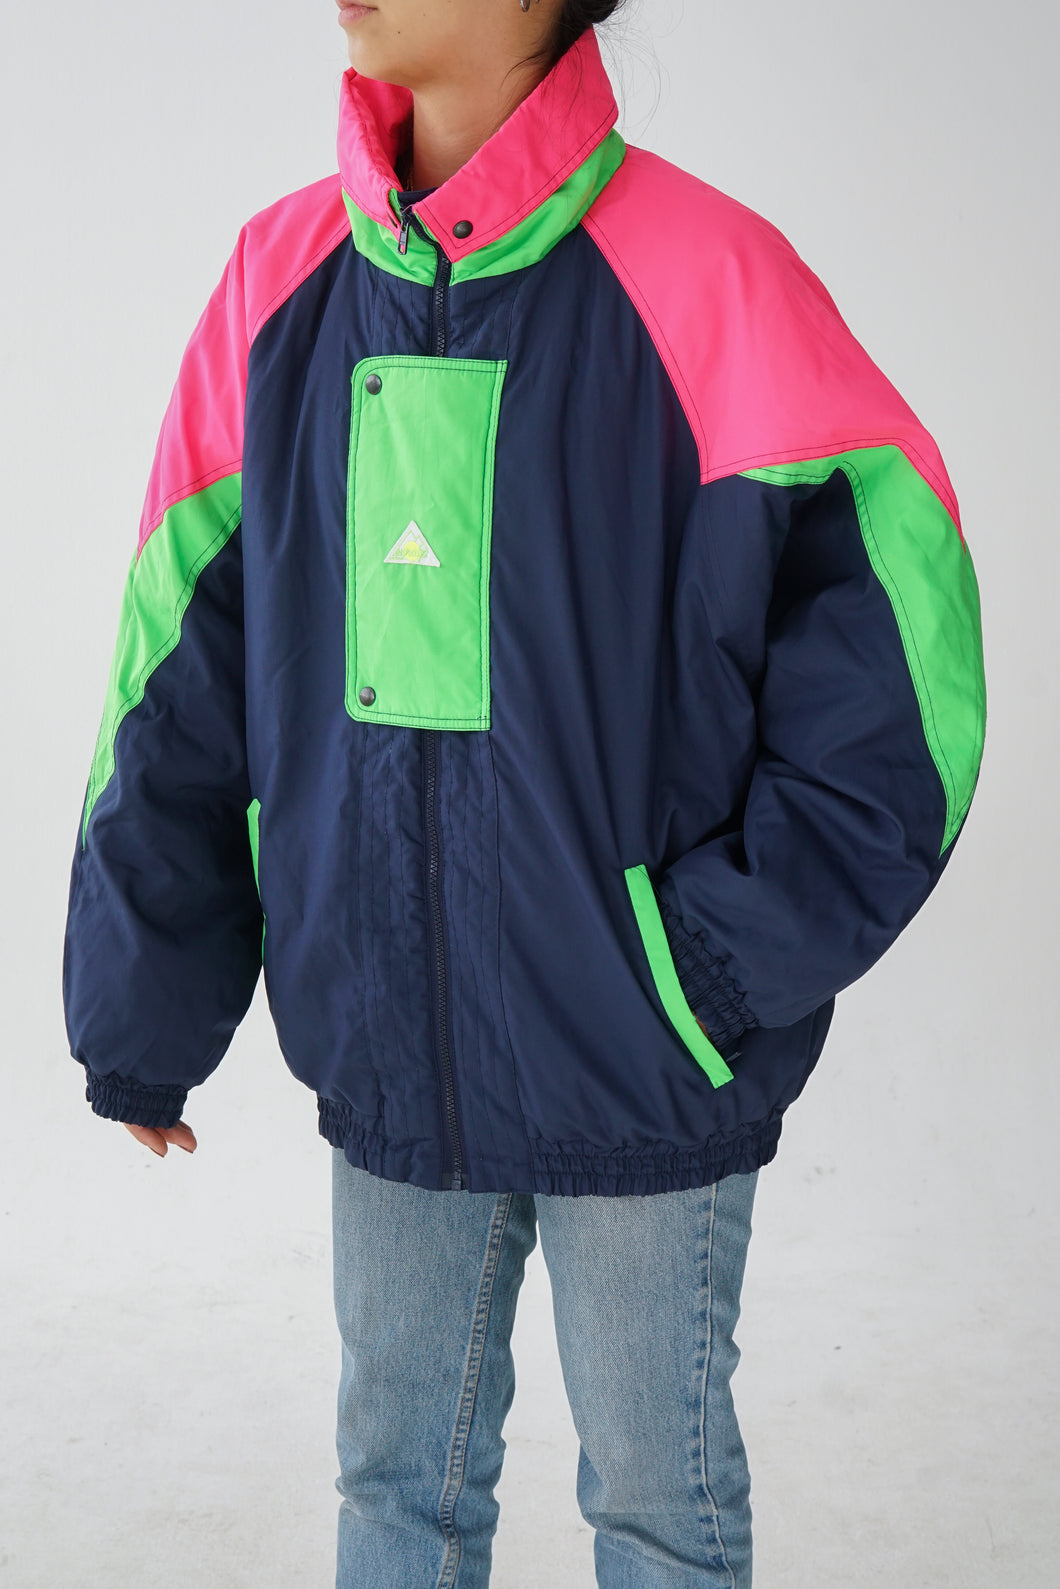 Manteau de ski vintage SunAlps bleu foncé et vert/rose fluos unisex taille 46 (L-XL)